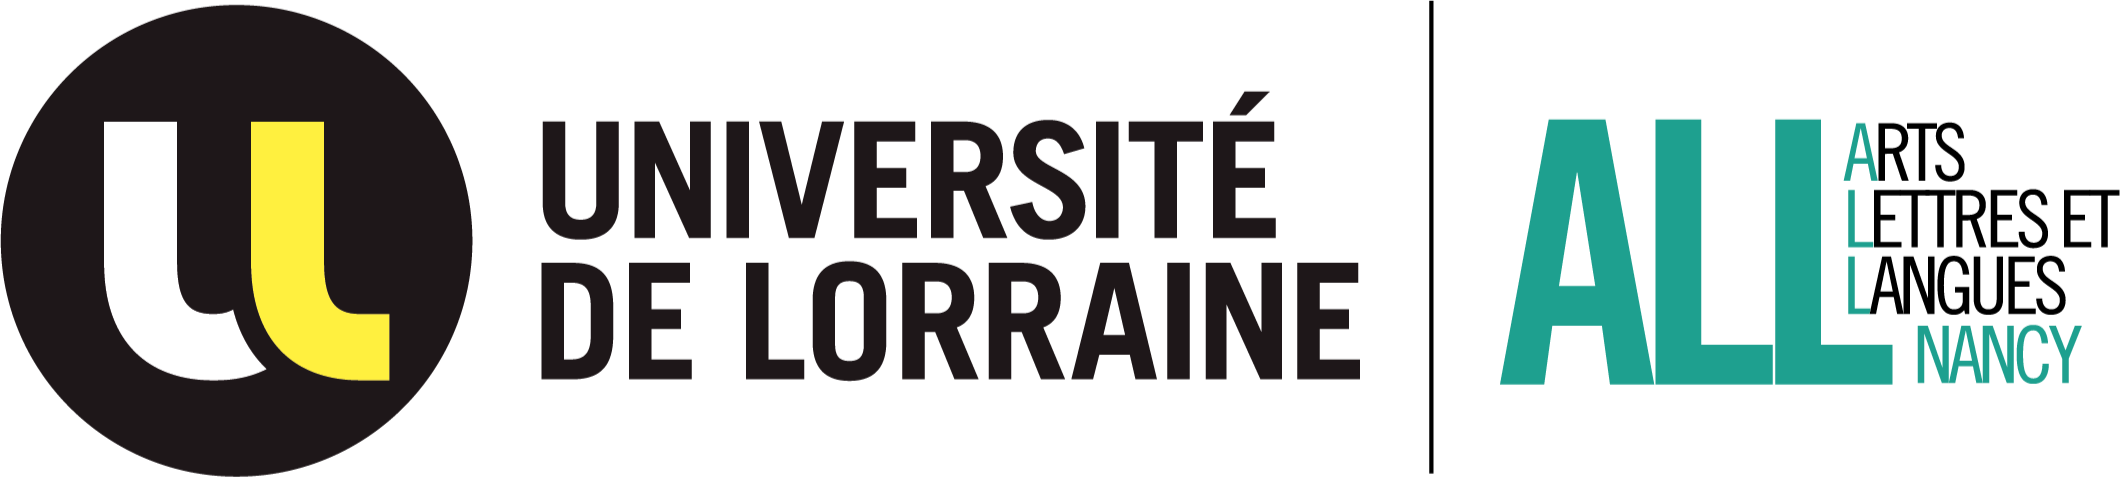 2.8 logo_UFR_ALLNancy-vecto-couleur